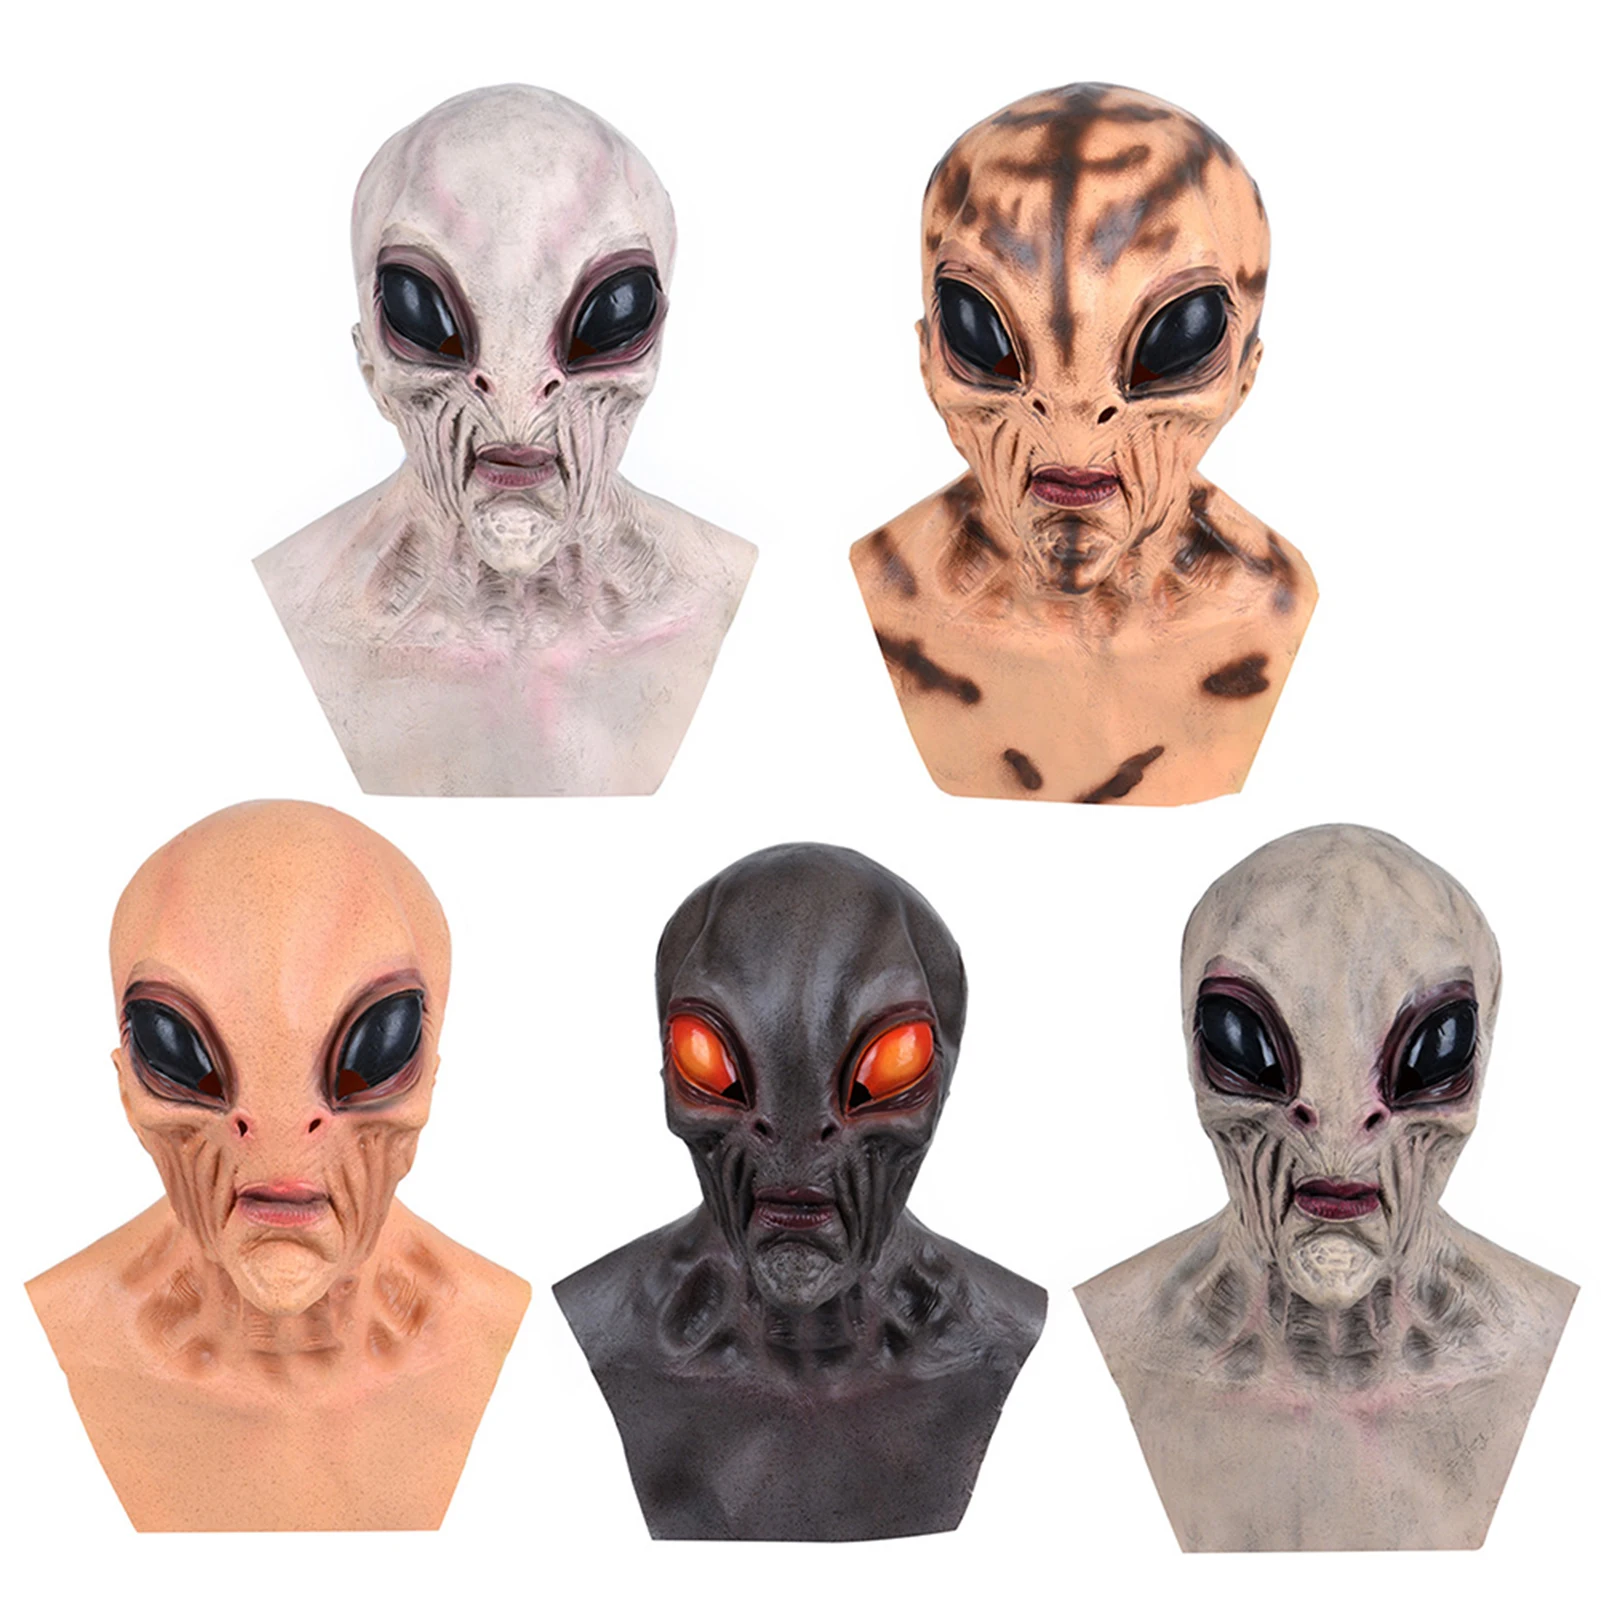 Máscara de Alien de terror, Cosplay, cara completa de miedo, OVNI, Alien, máscaras de látex, casco, fiesta de máscaras de Halloween, accesorios de disfraces